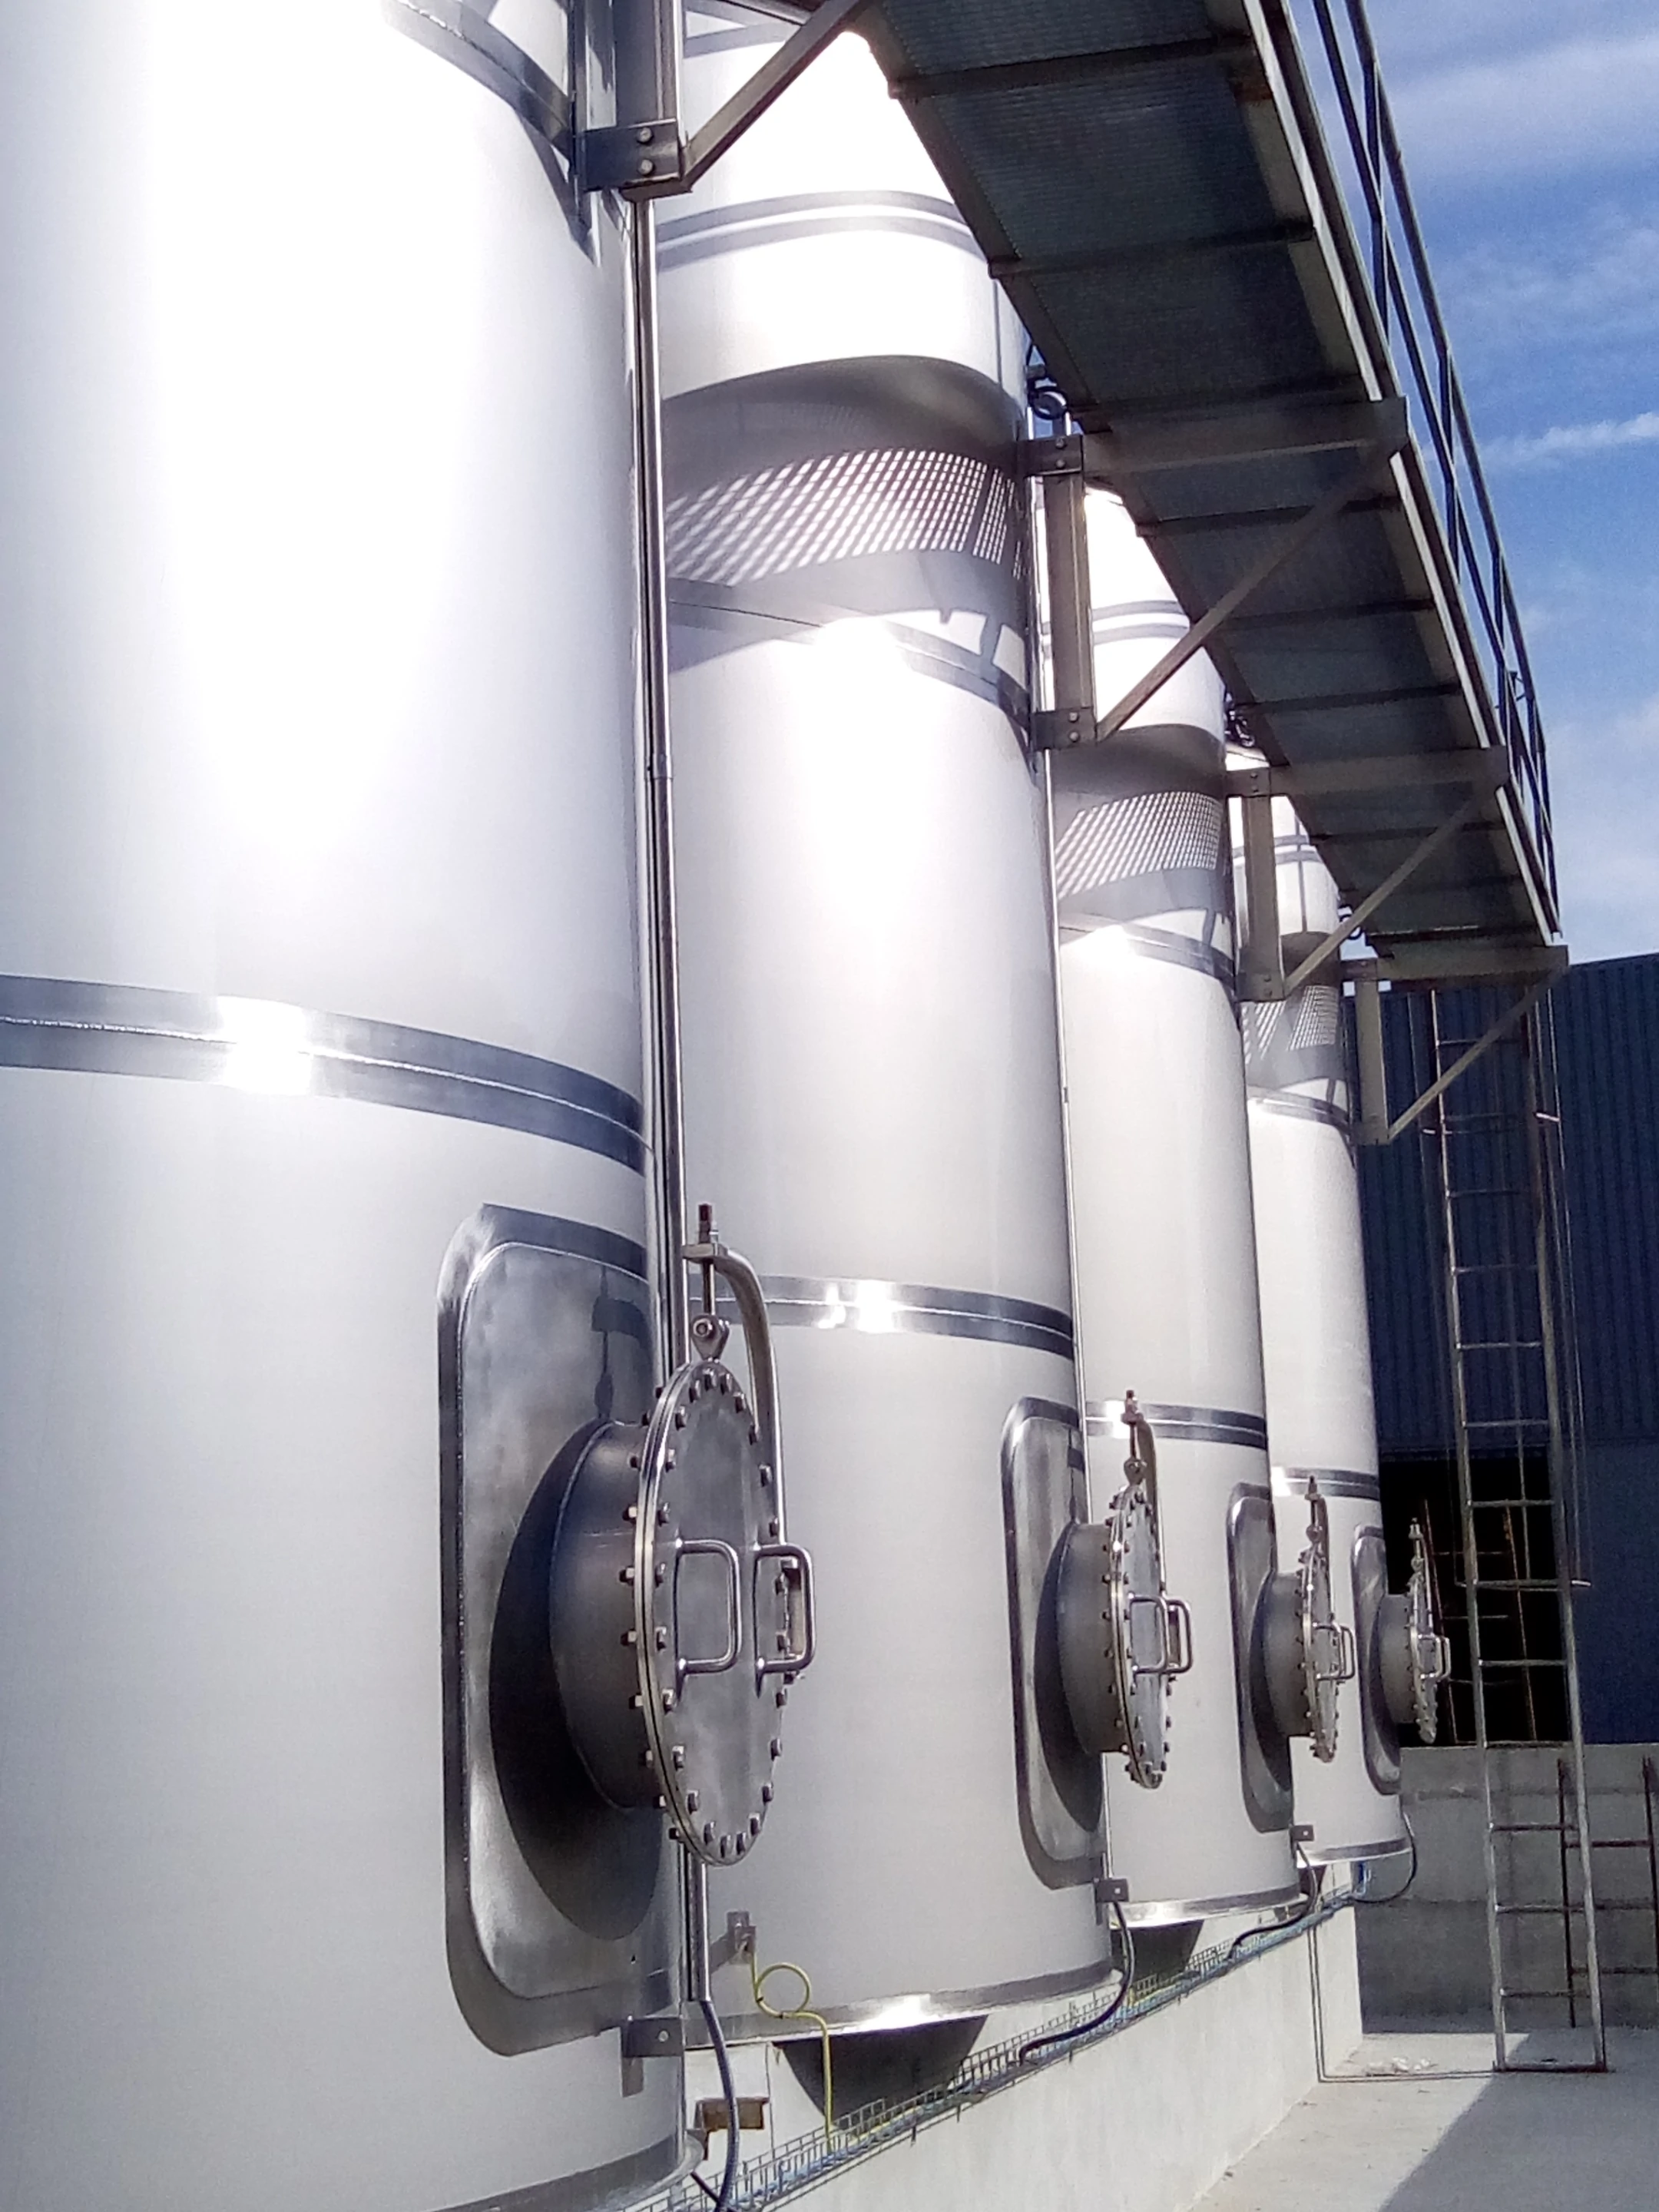 BTL Storage tanks in stainless steel – Chemical Industry – Natural resins